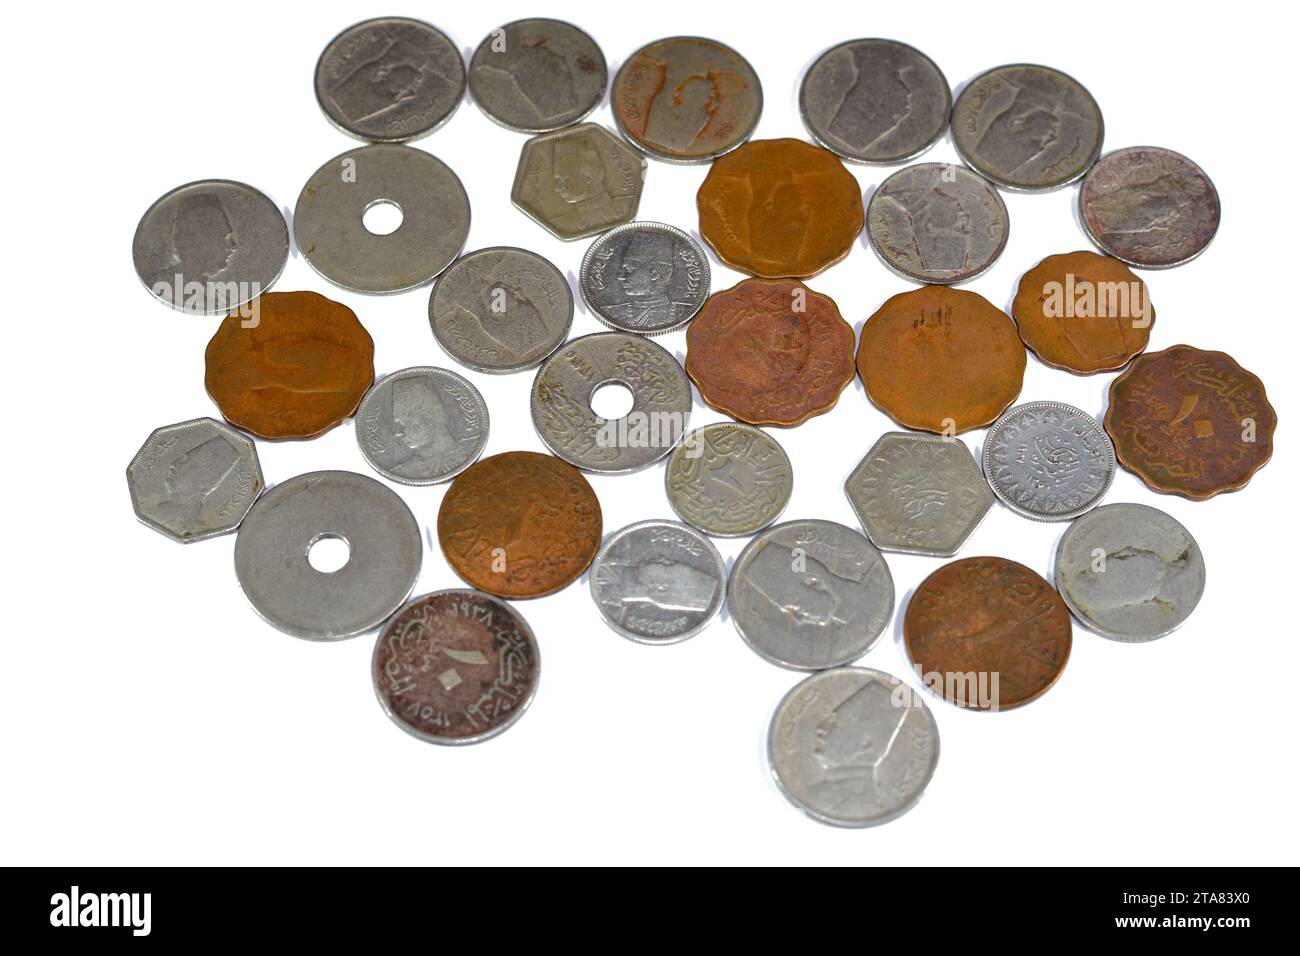 Vecchie monete egiziane dell'epoca del Regno d'Egitto e del Sudan in tempi e valori diversi, sfondo di vecchie monete egiziane di milliemi e pia Foto Stock